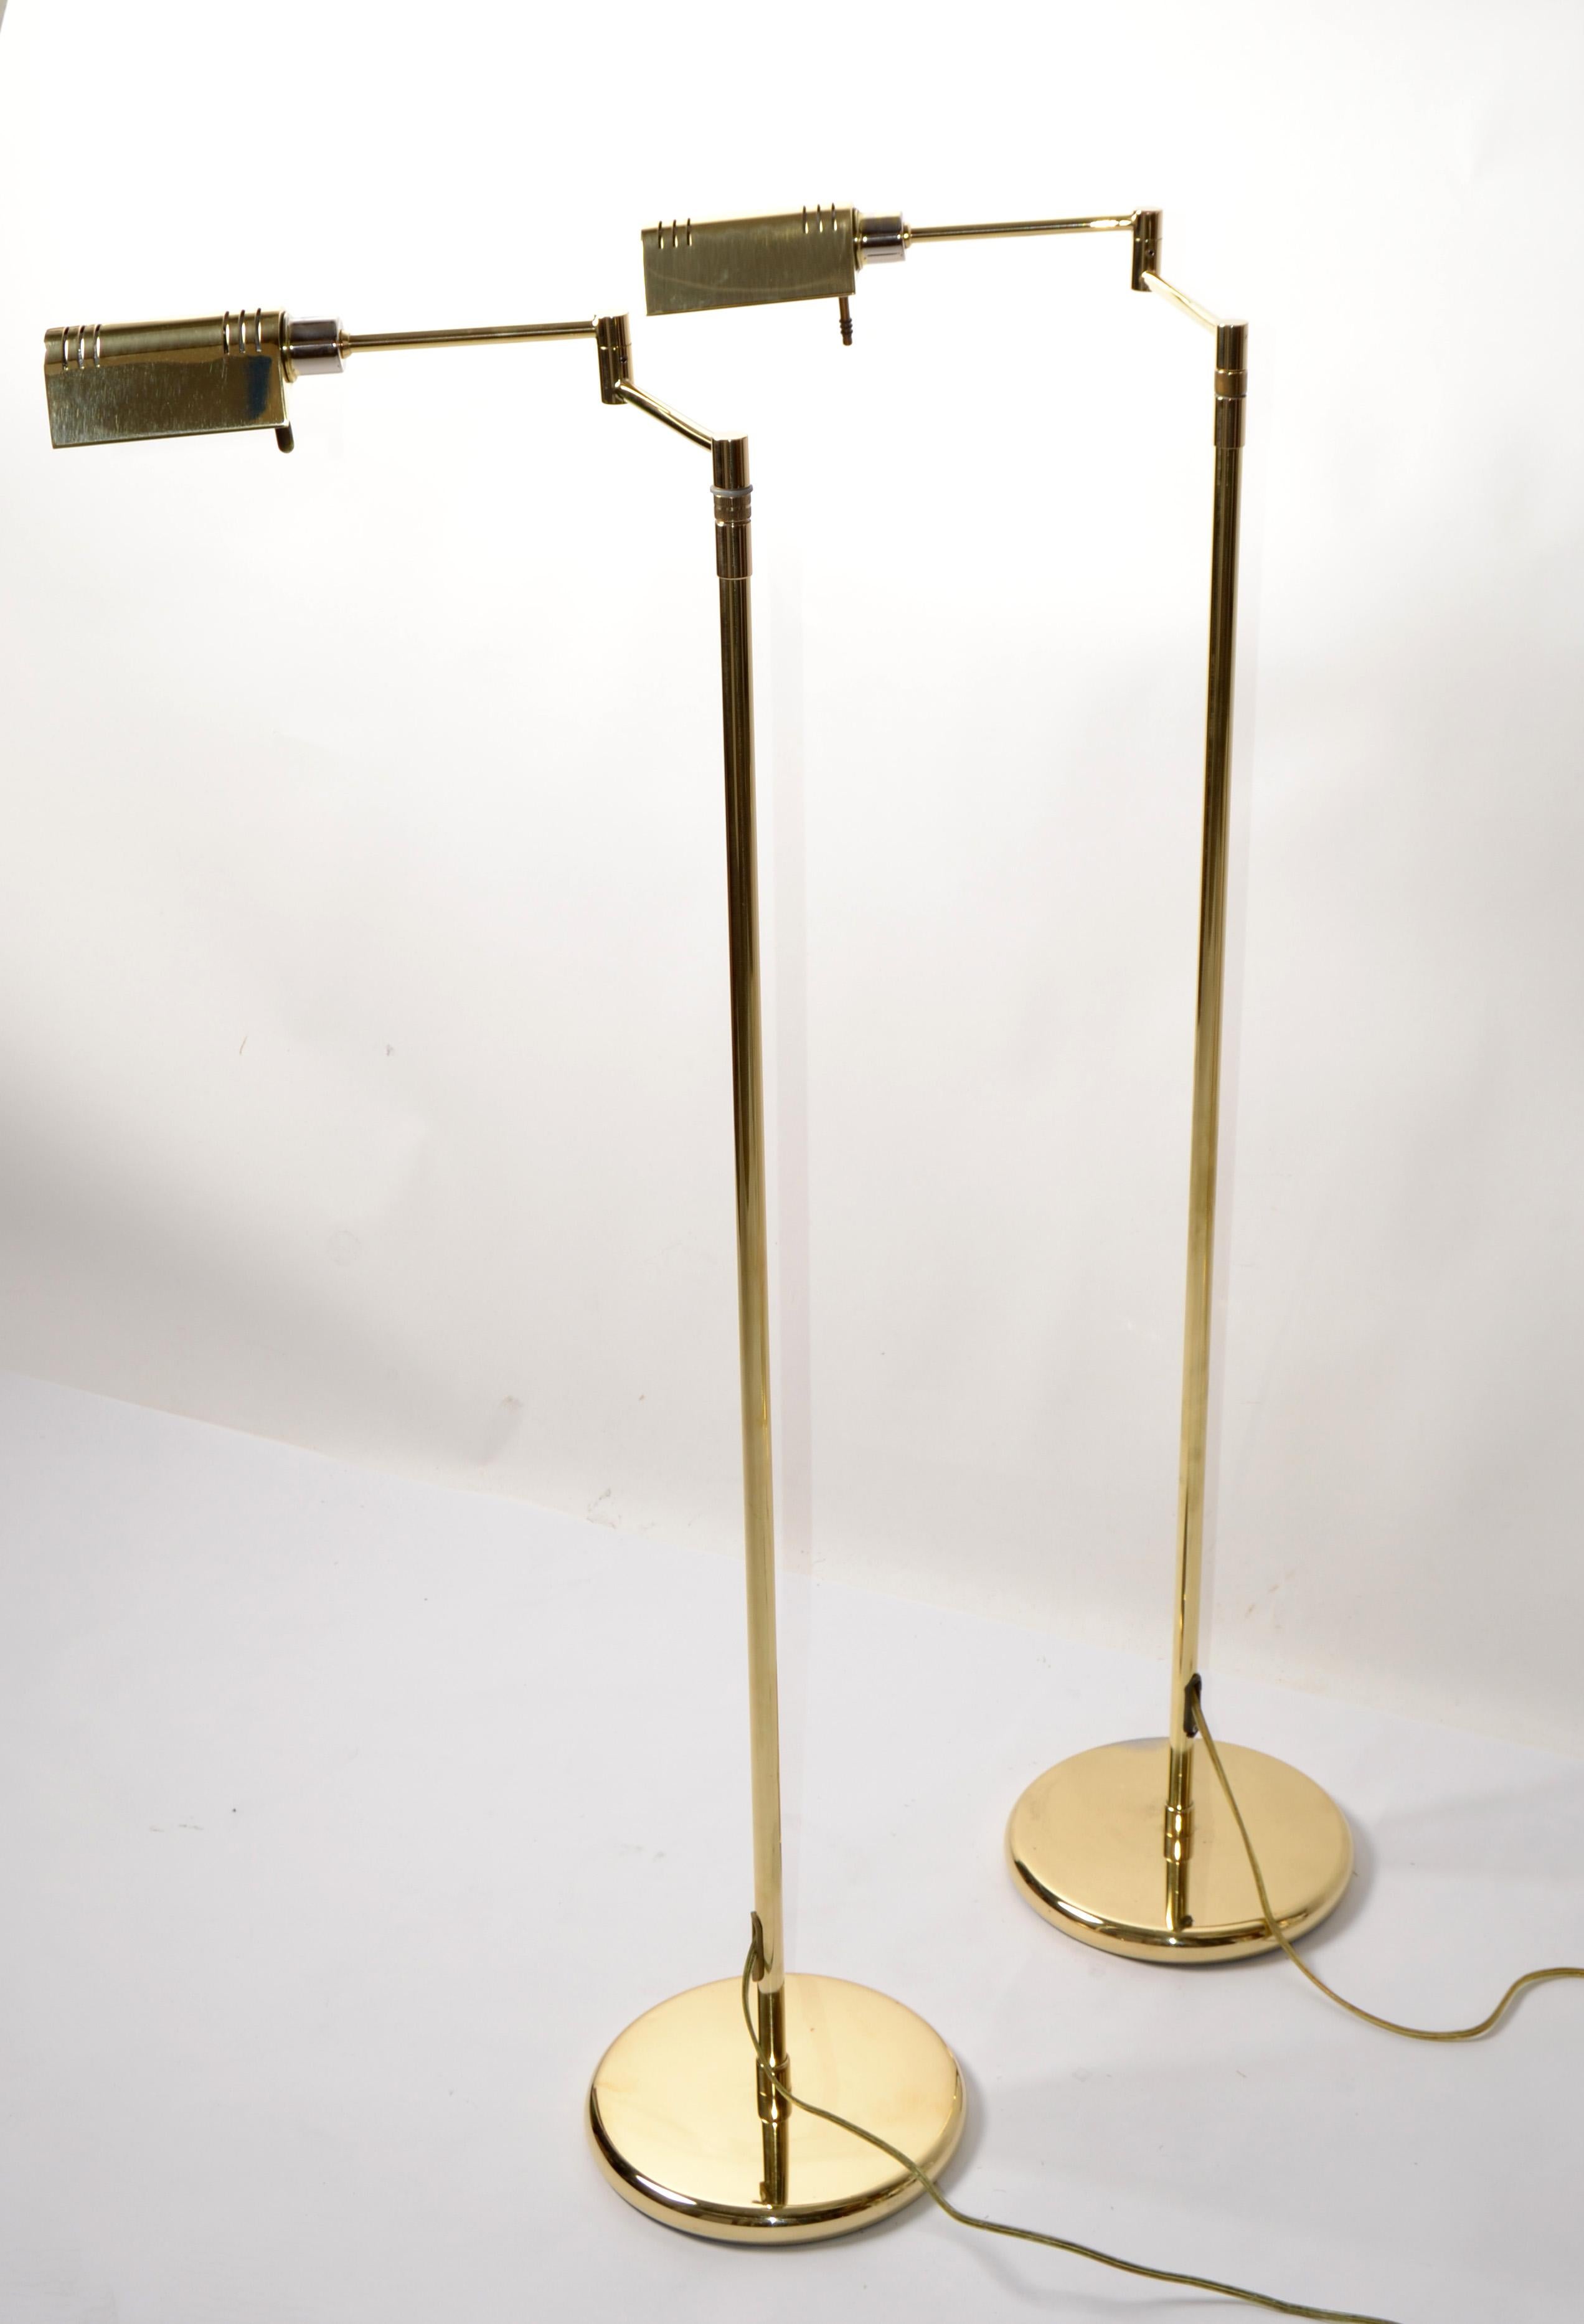 Paire de Leuchten polis de Holtkoetter (Allemagne) conçus dans le style de la période du Bauhaus et fabriqués vers le début des années 1980.  
Les lampes de pharmacie de lecture, les lampes de sol à bras pivotant à côté de votre fauteuil inclinable